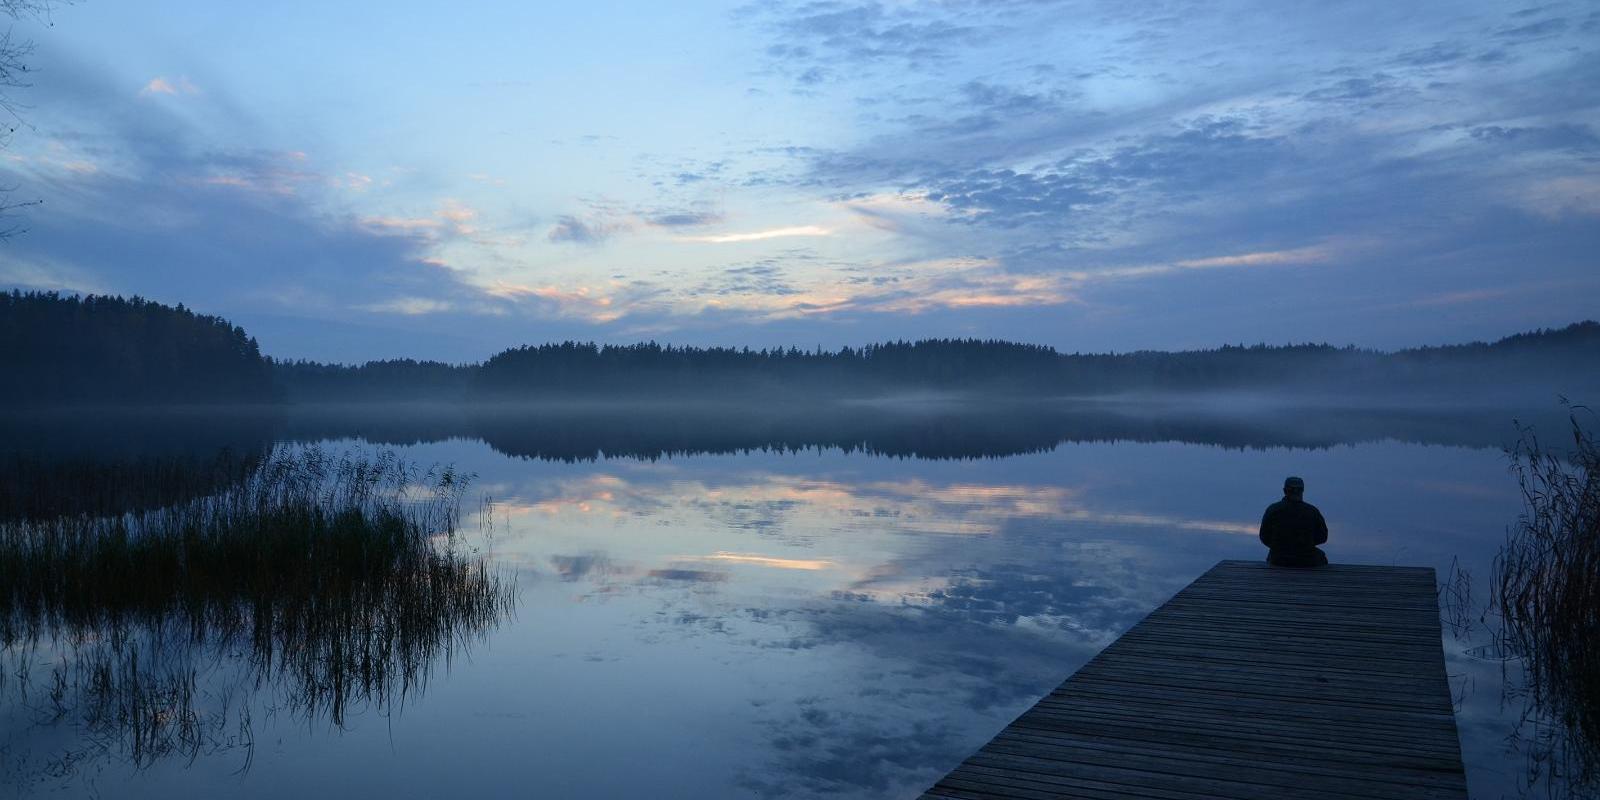 Karula National Park and National Park Visitor Centre in Lake Ähijärv